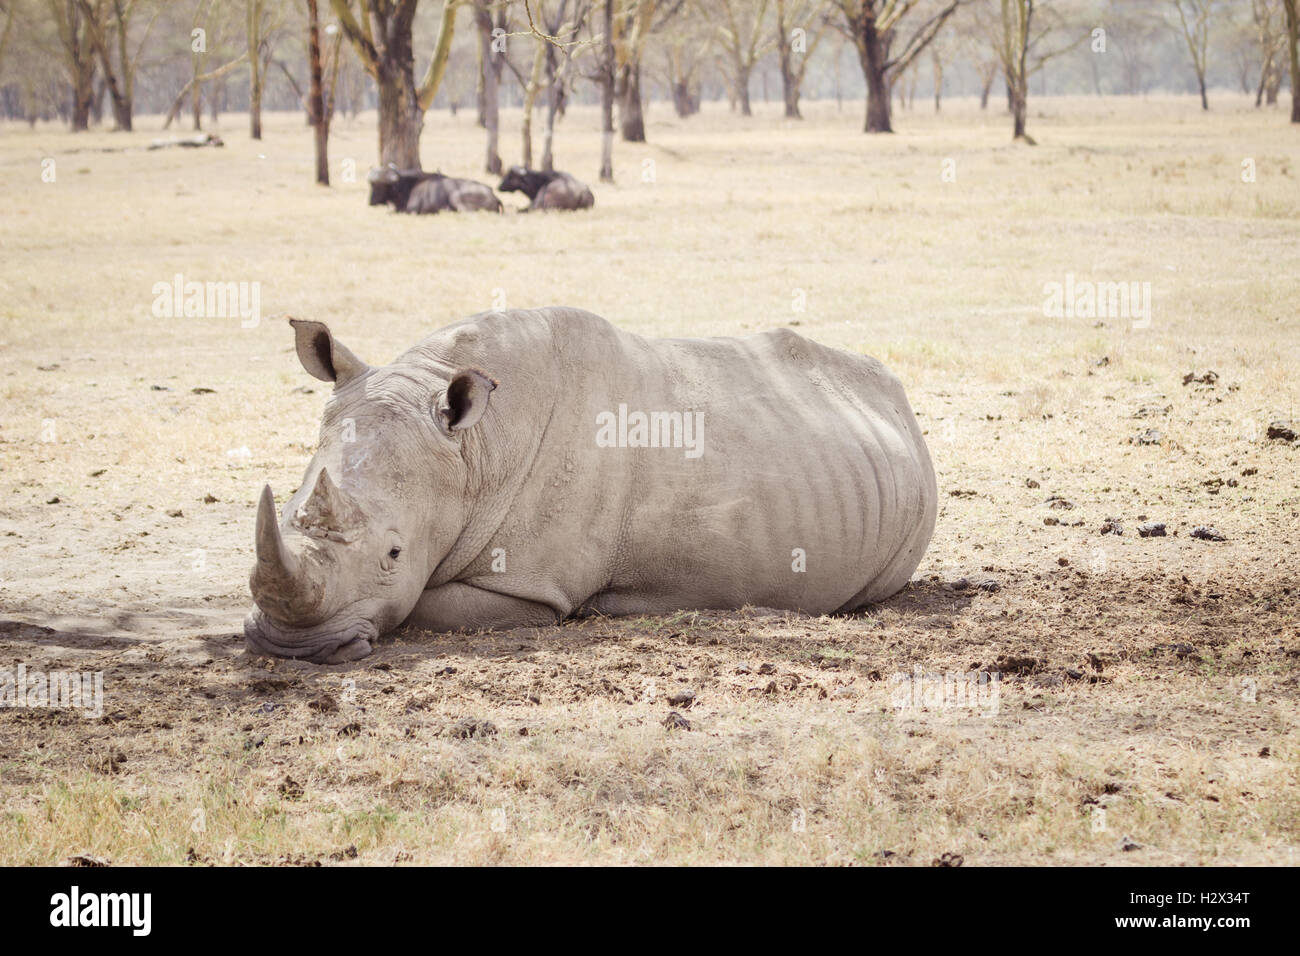 Grand rhinocéros fatigué Banque D'Images